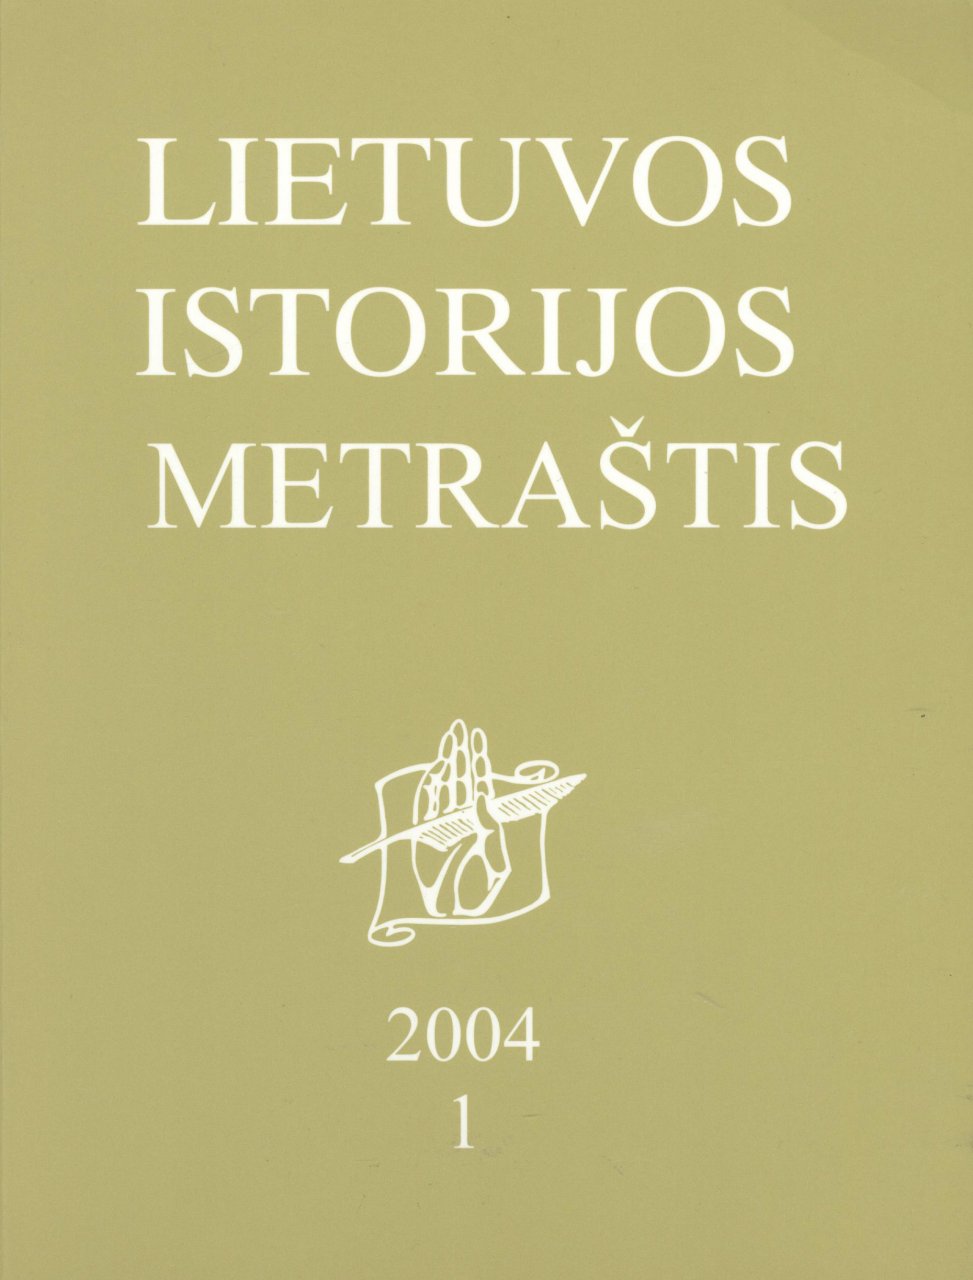 Lietuvos istorijos metraštis 2004 metai 1 